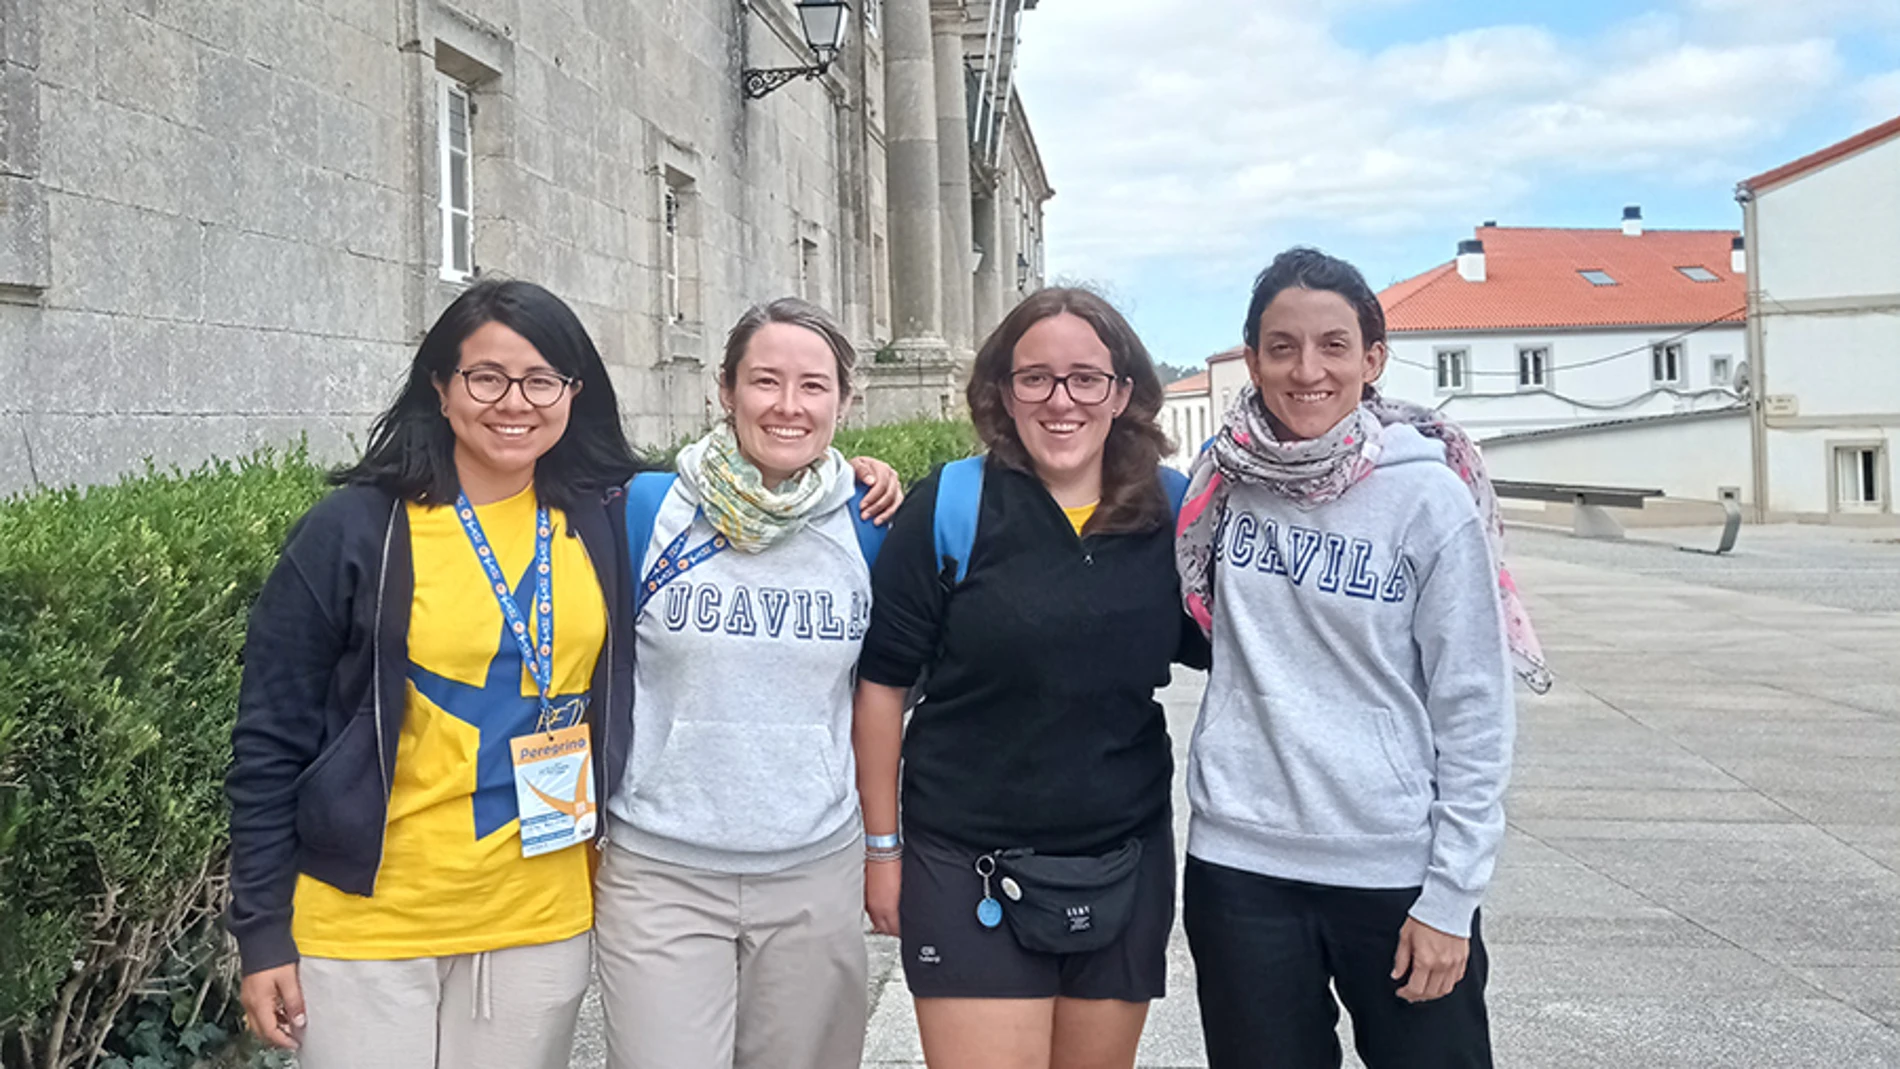 Estudiantes de la UCAV en Santiago de Compostela